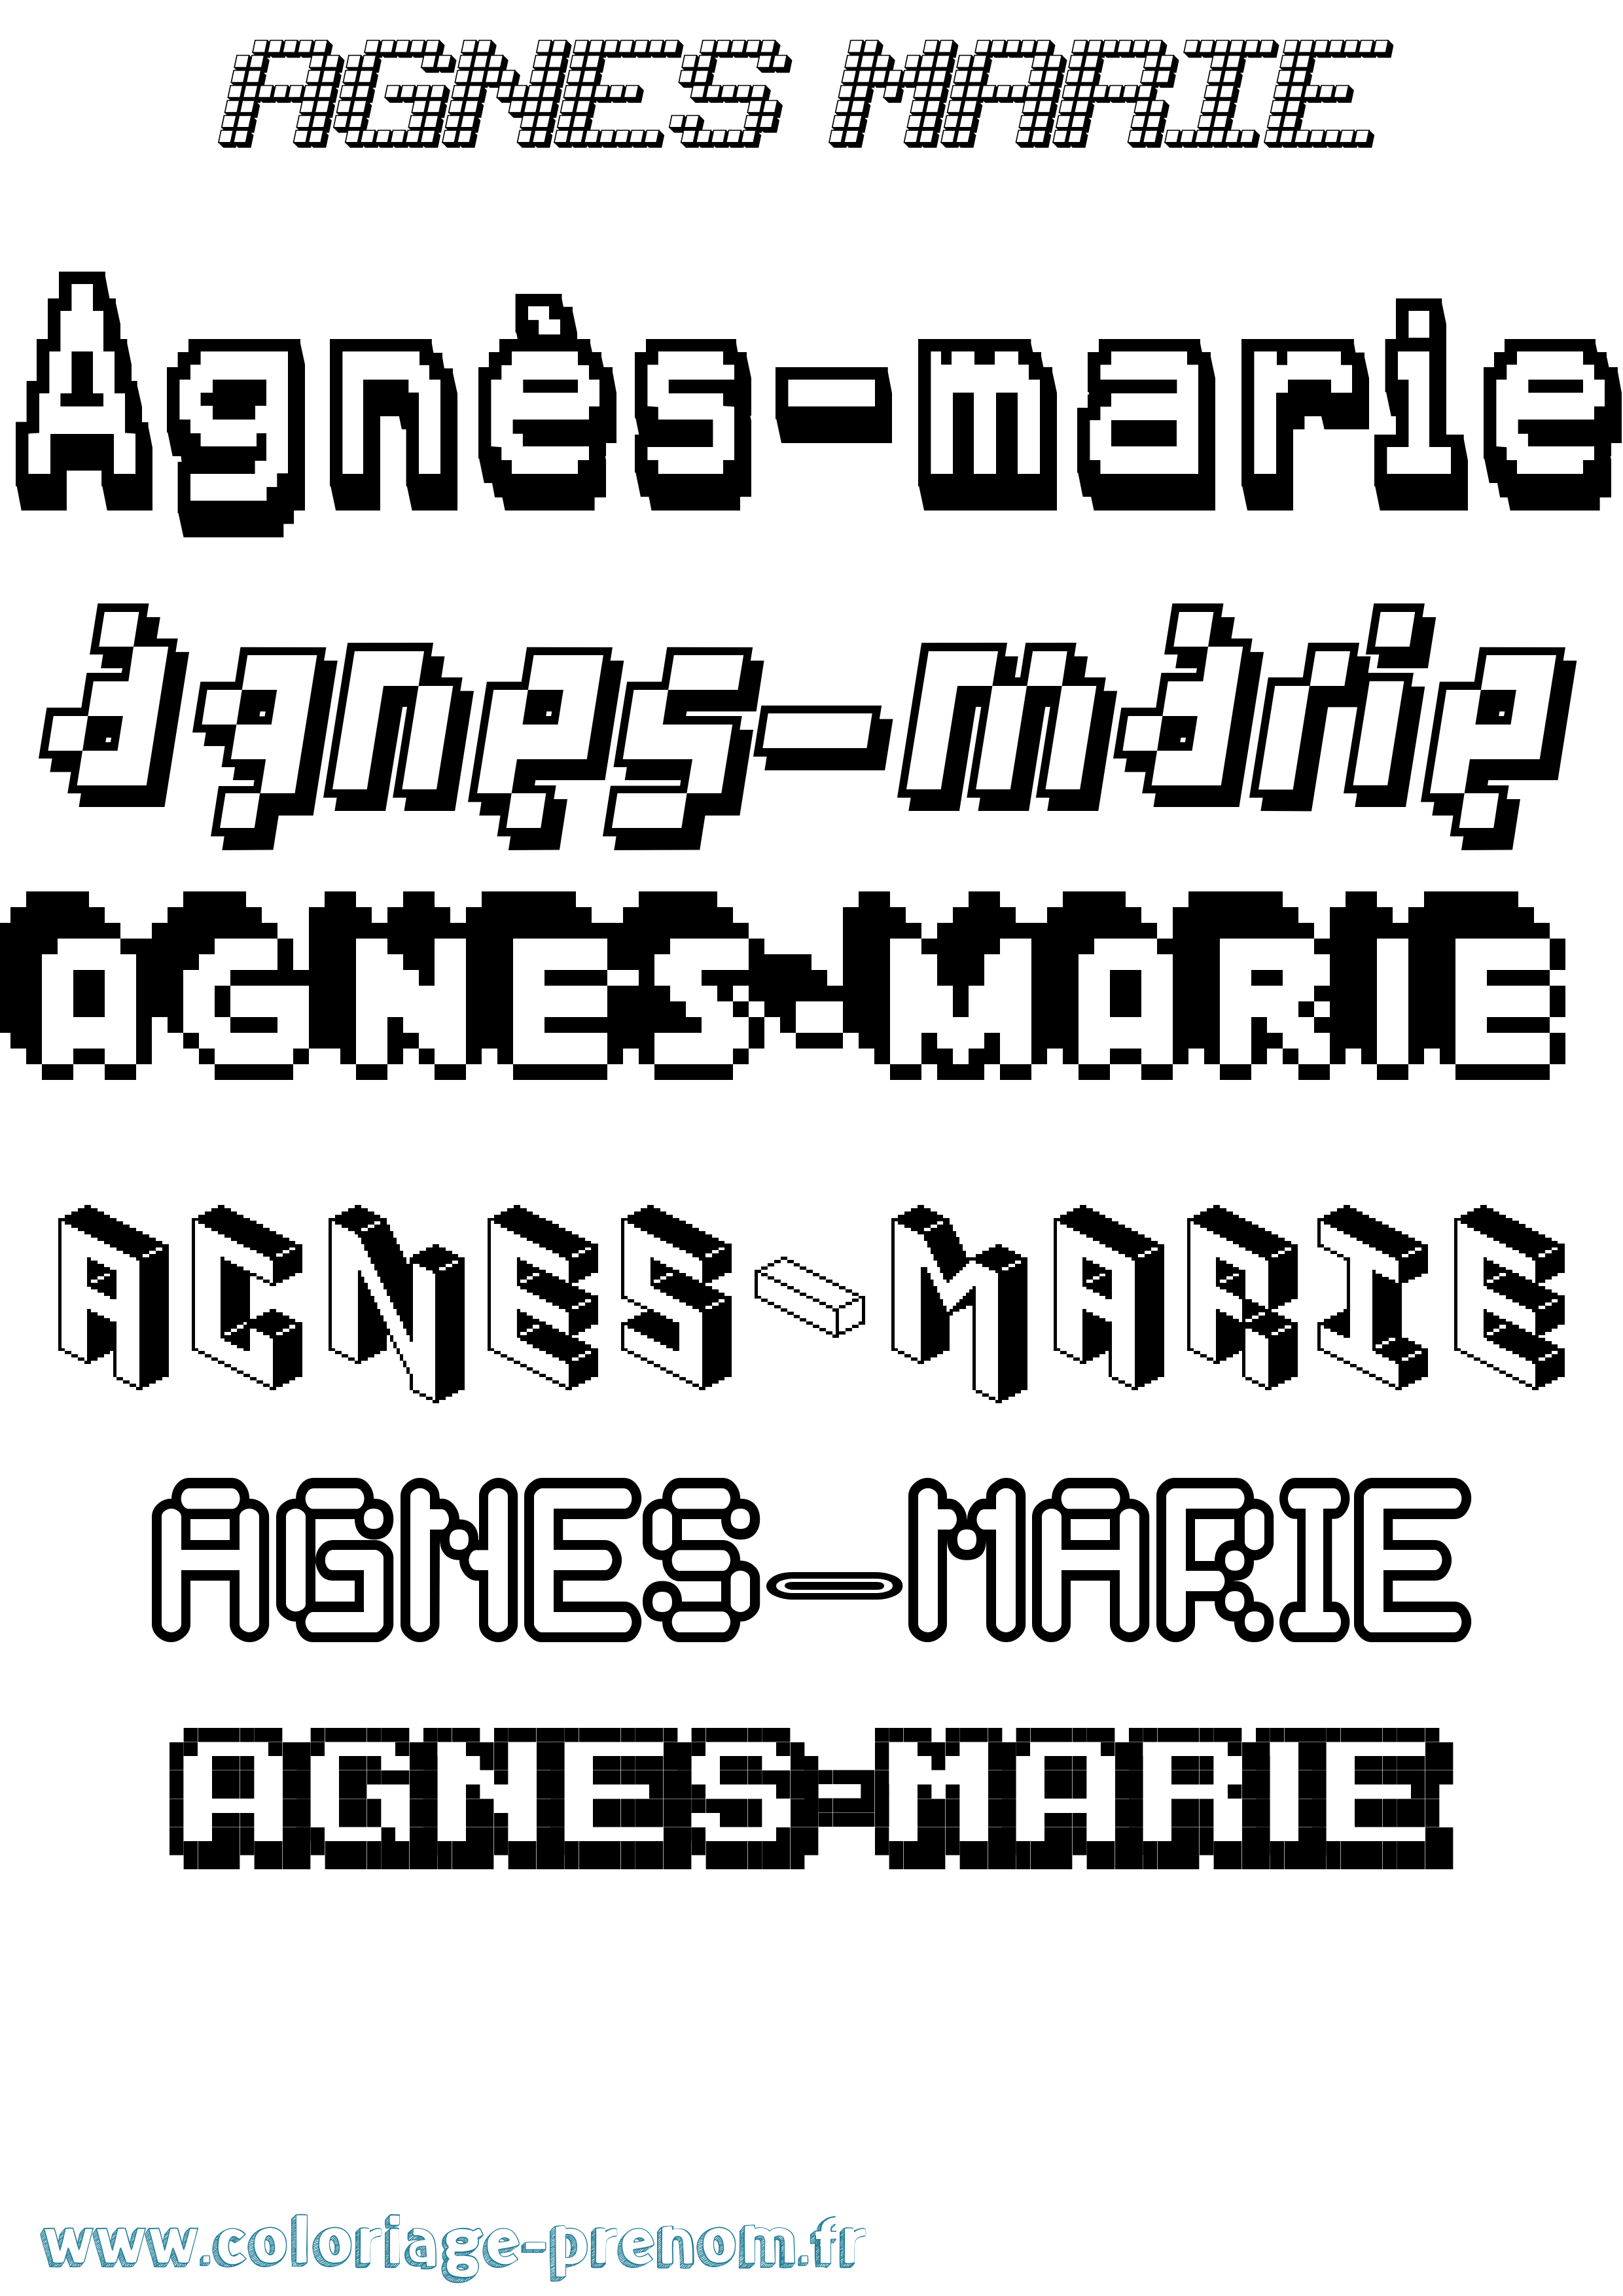 Coloriage prénom Agnès-Marie Pixel